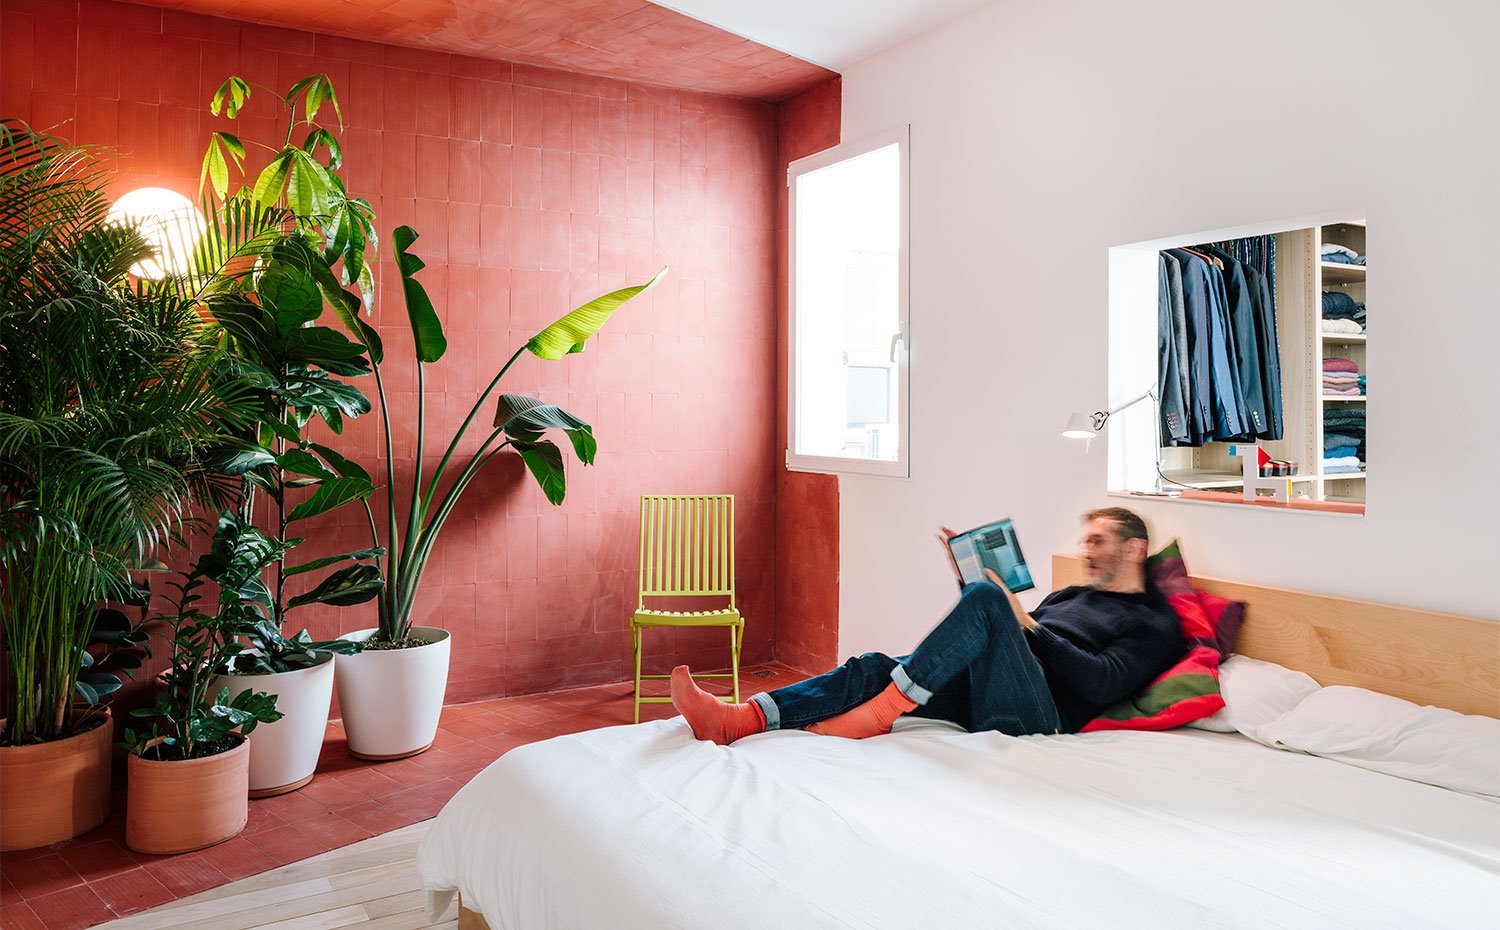 Dormitorio con hueco en pared sobre cabecero, pared pintada en tonos teja, grandes macetas con plantas, silla de madera en tonos verdes